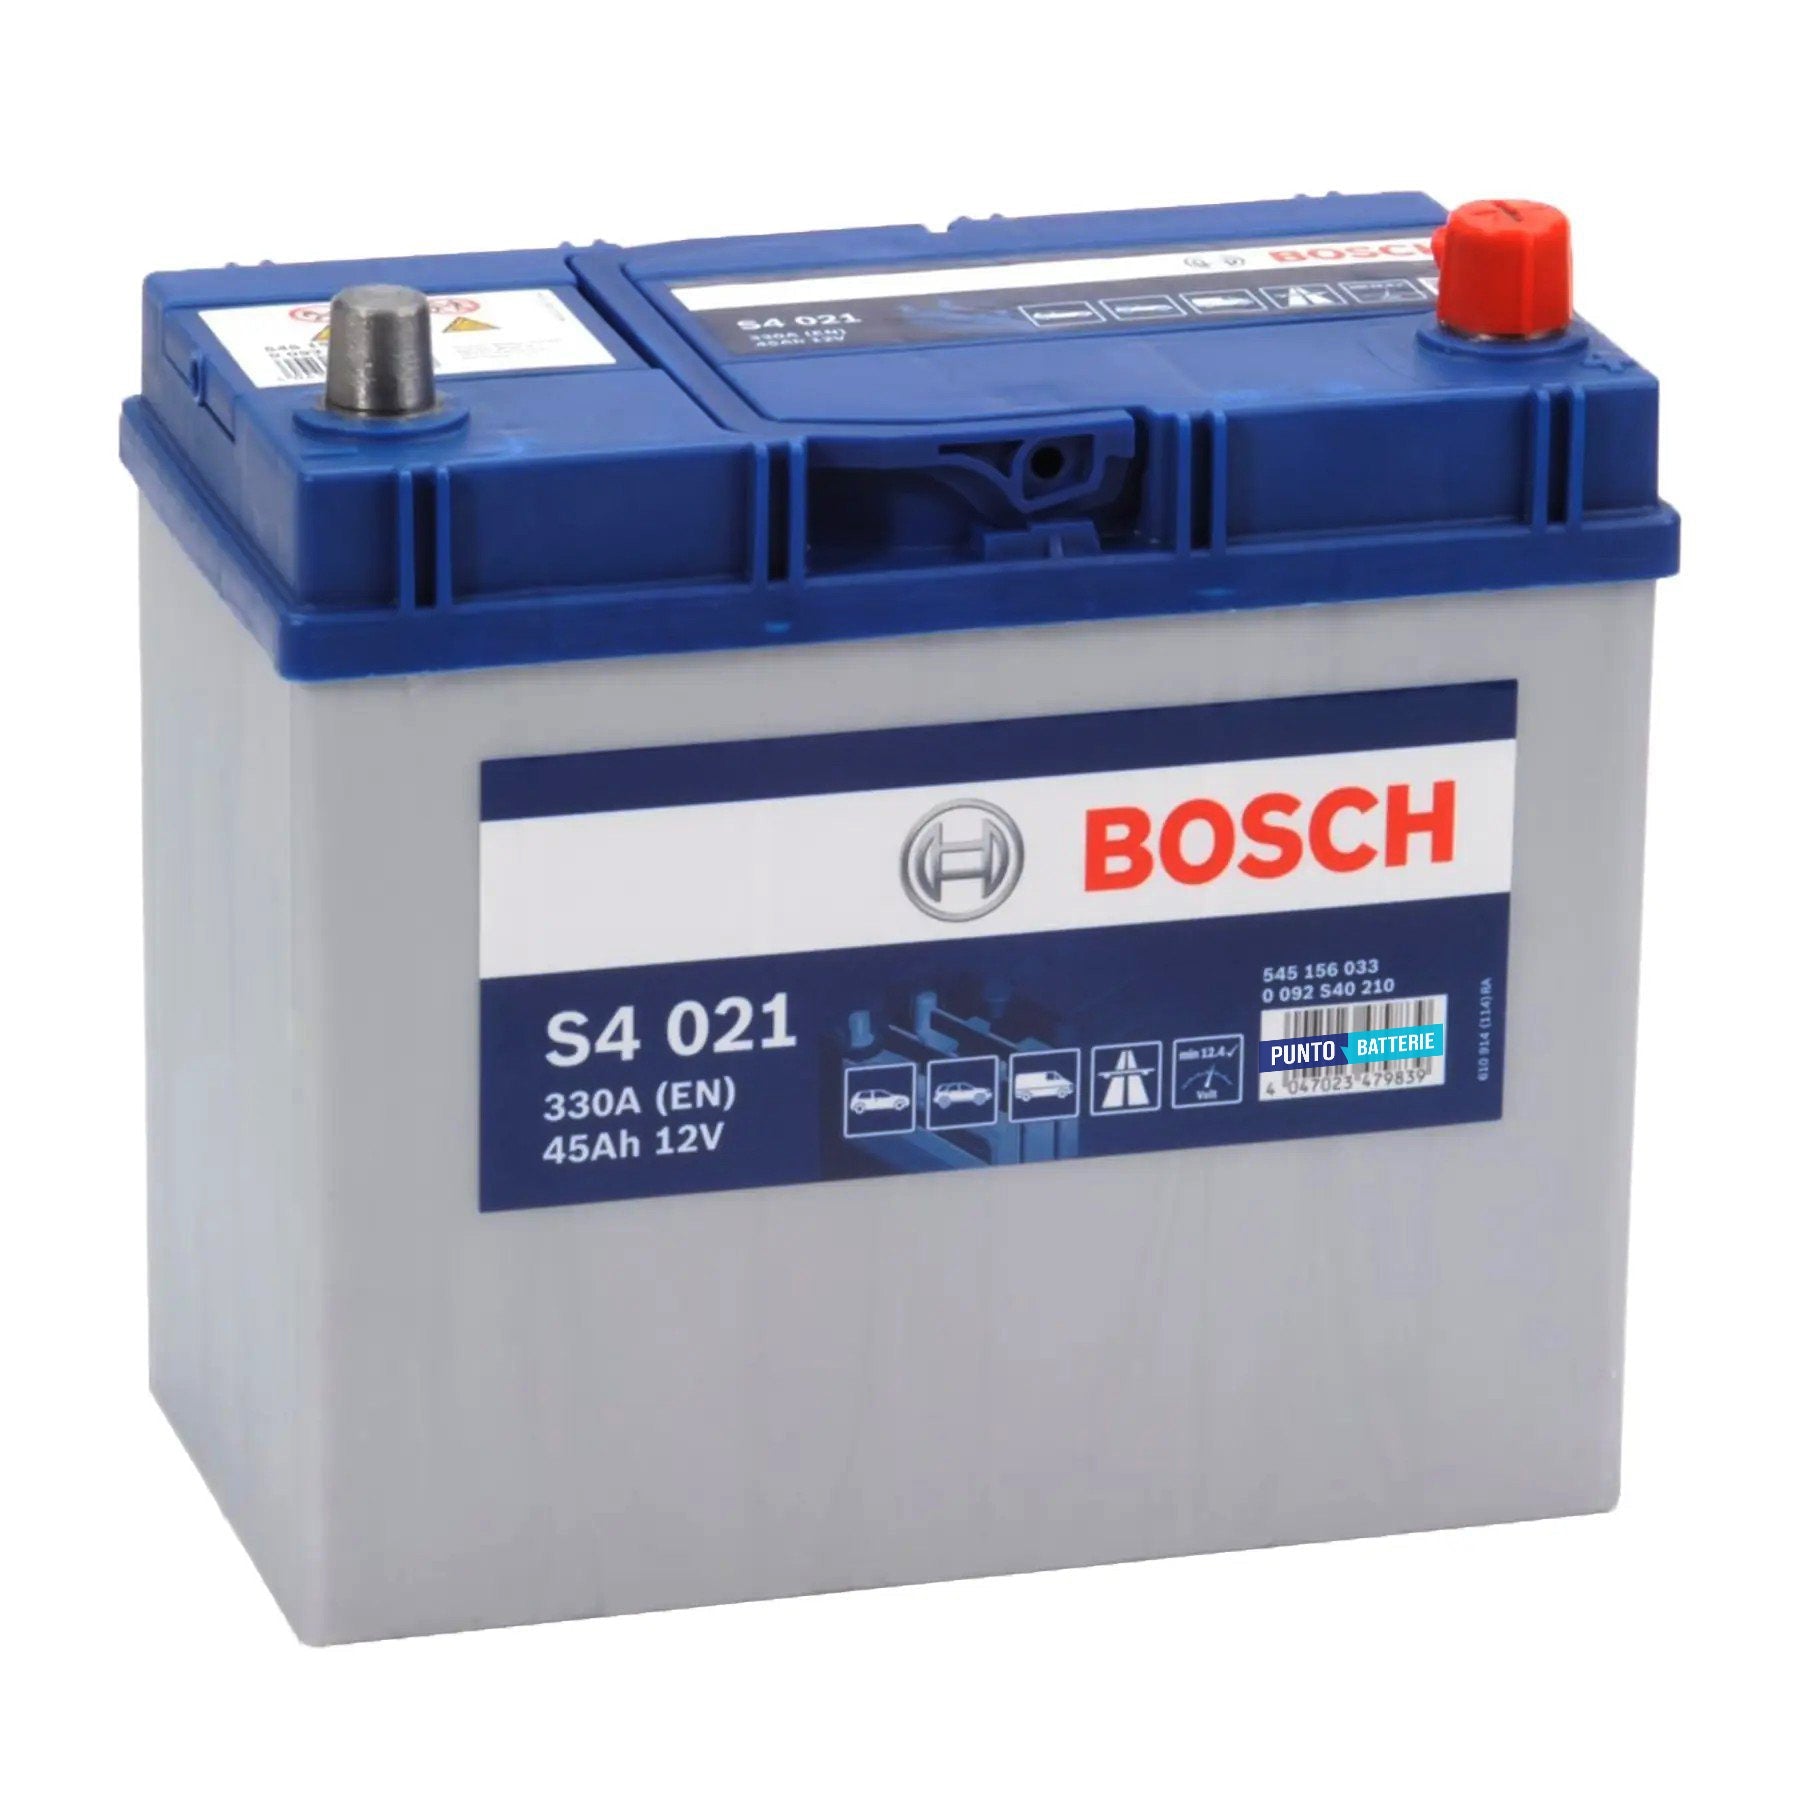 Batteria originale Bosch S4 S4 021, dimensioni 238 x 129 x 227, polo positivo a destra, 12 volt, 45 amperora, 330 ampere. Batteria per auto e veicoli leggeri.